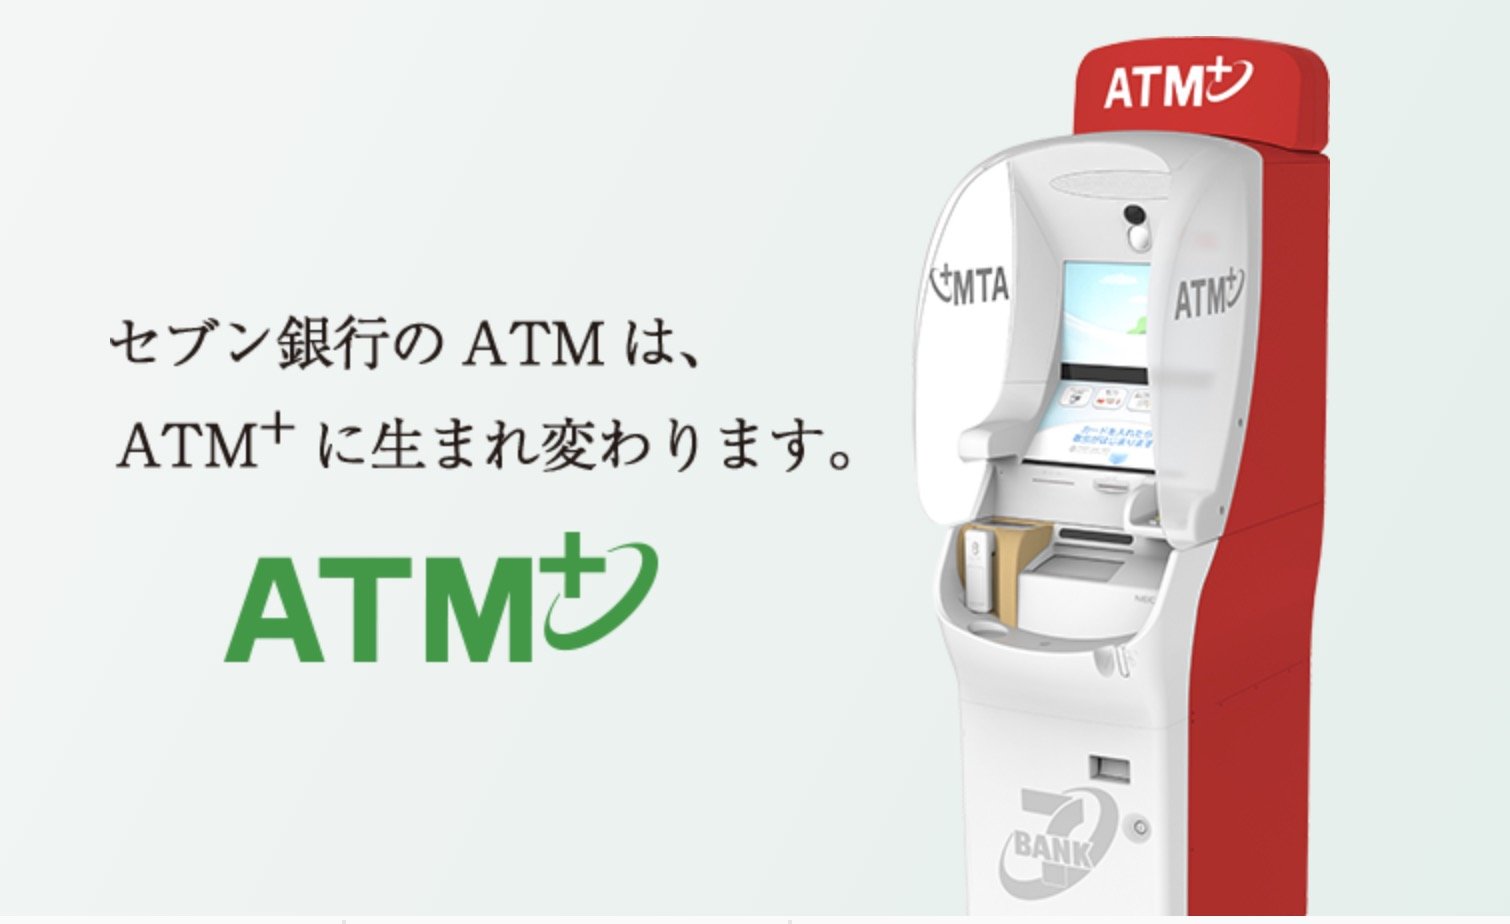 セブン銀行ATMで、マイナンバーカードの健康保険証利用申し込み可能に